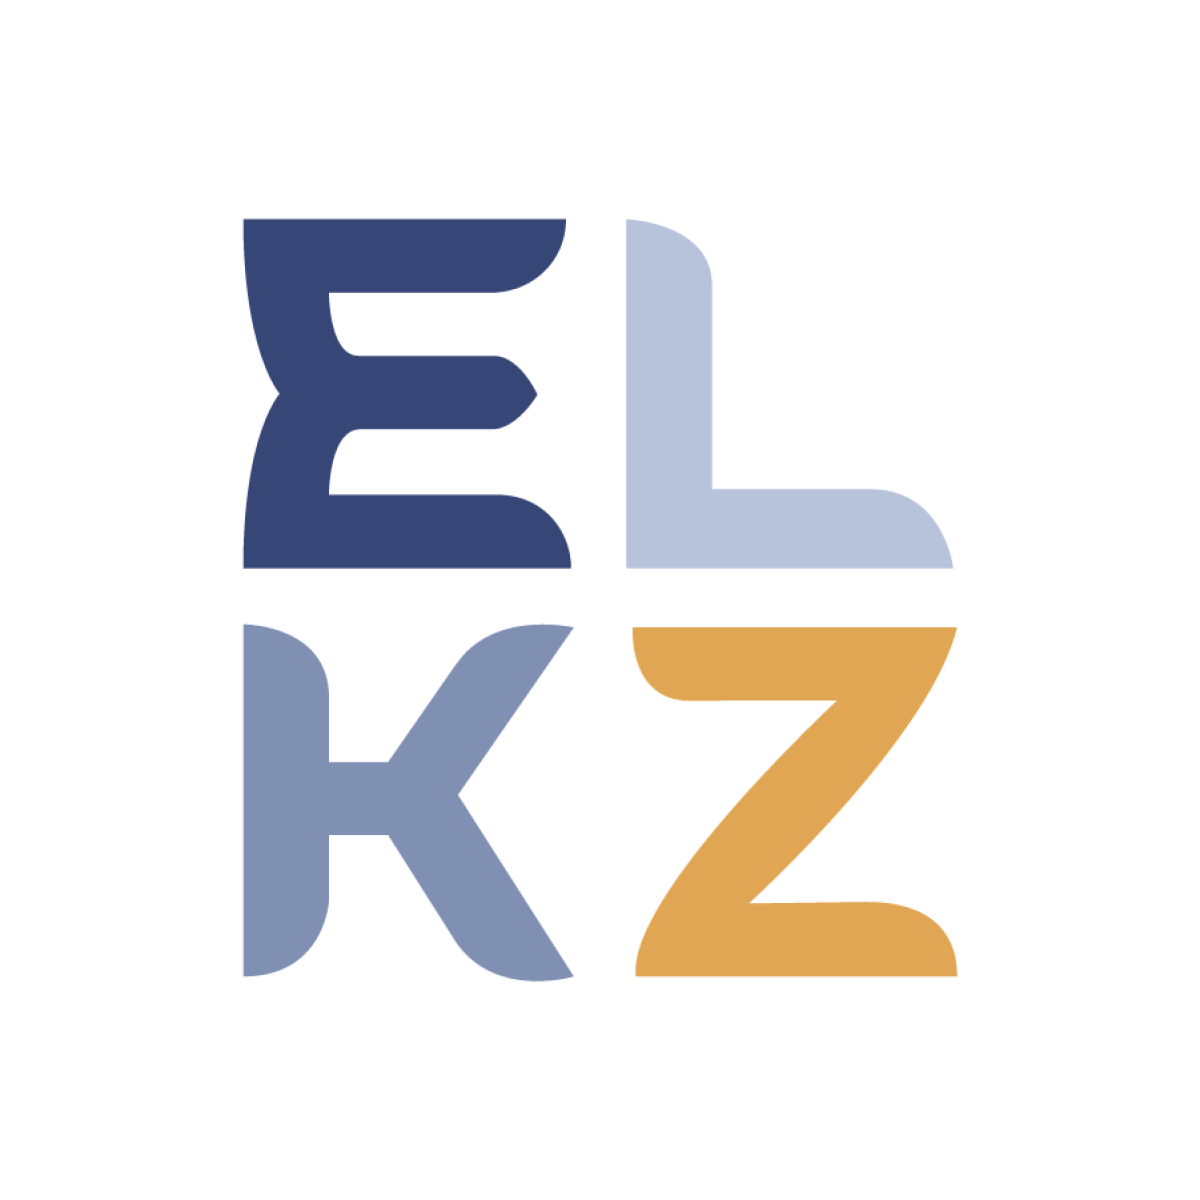 «Еl.kz» - предстал в обновленном формате